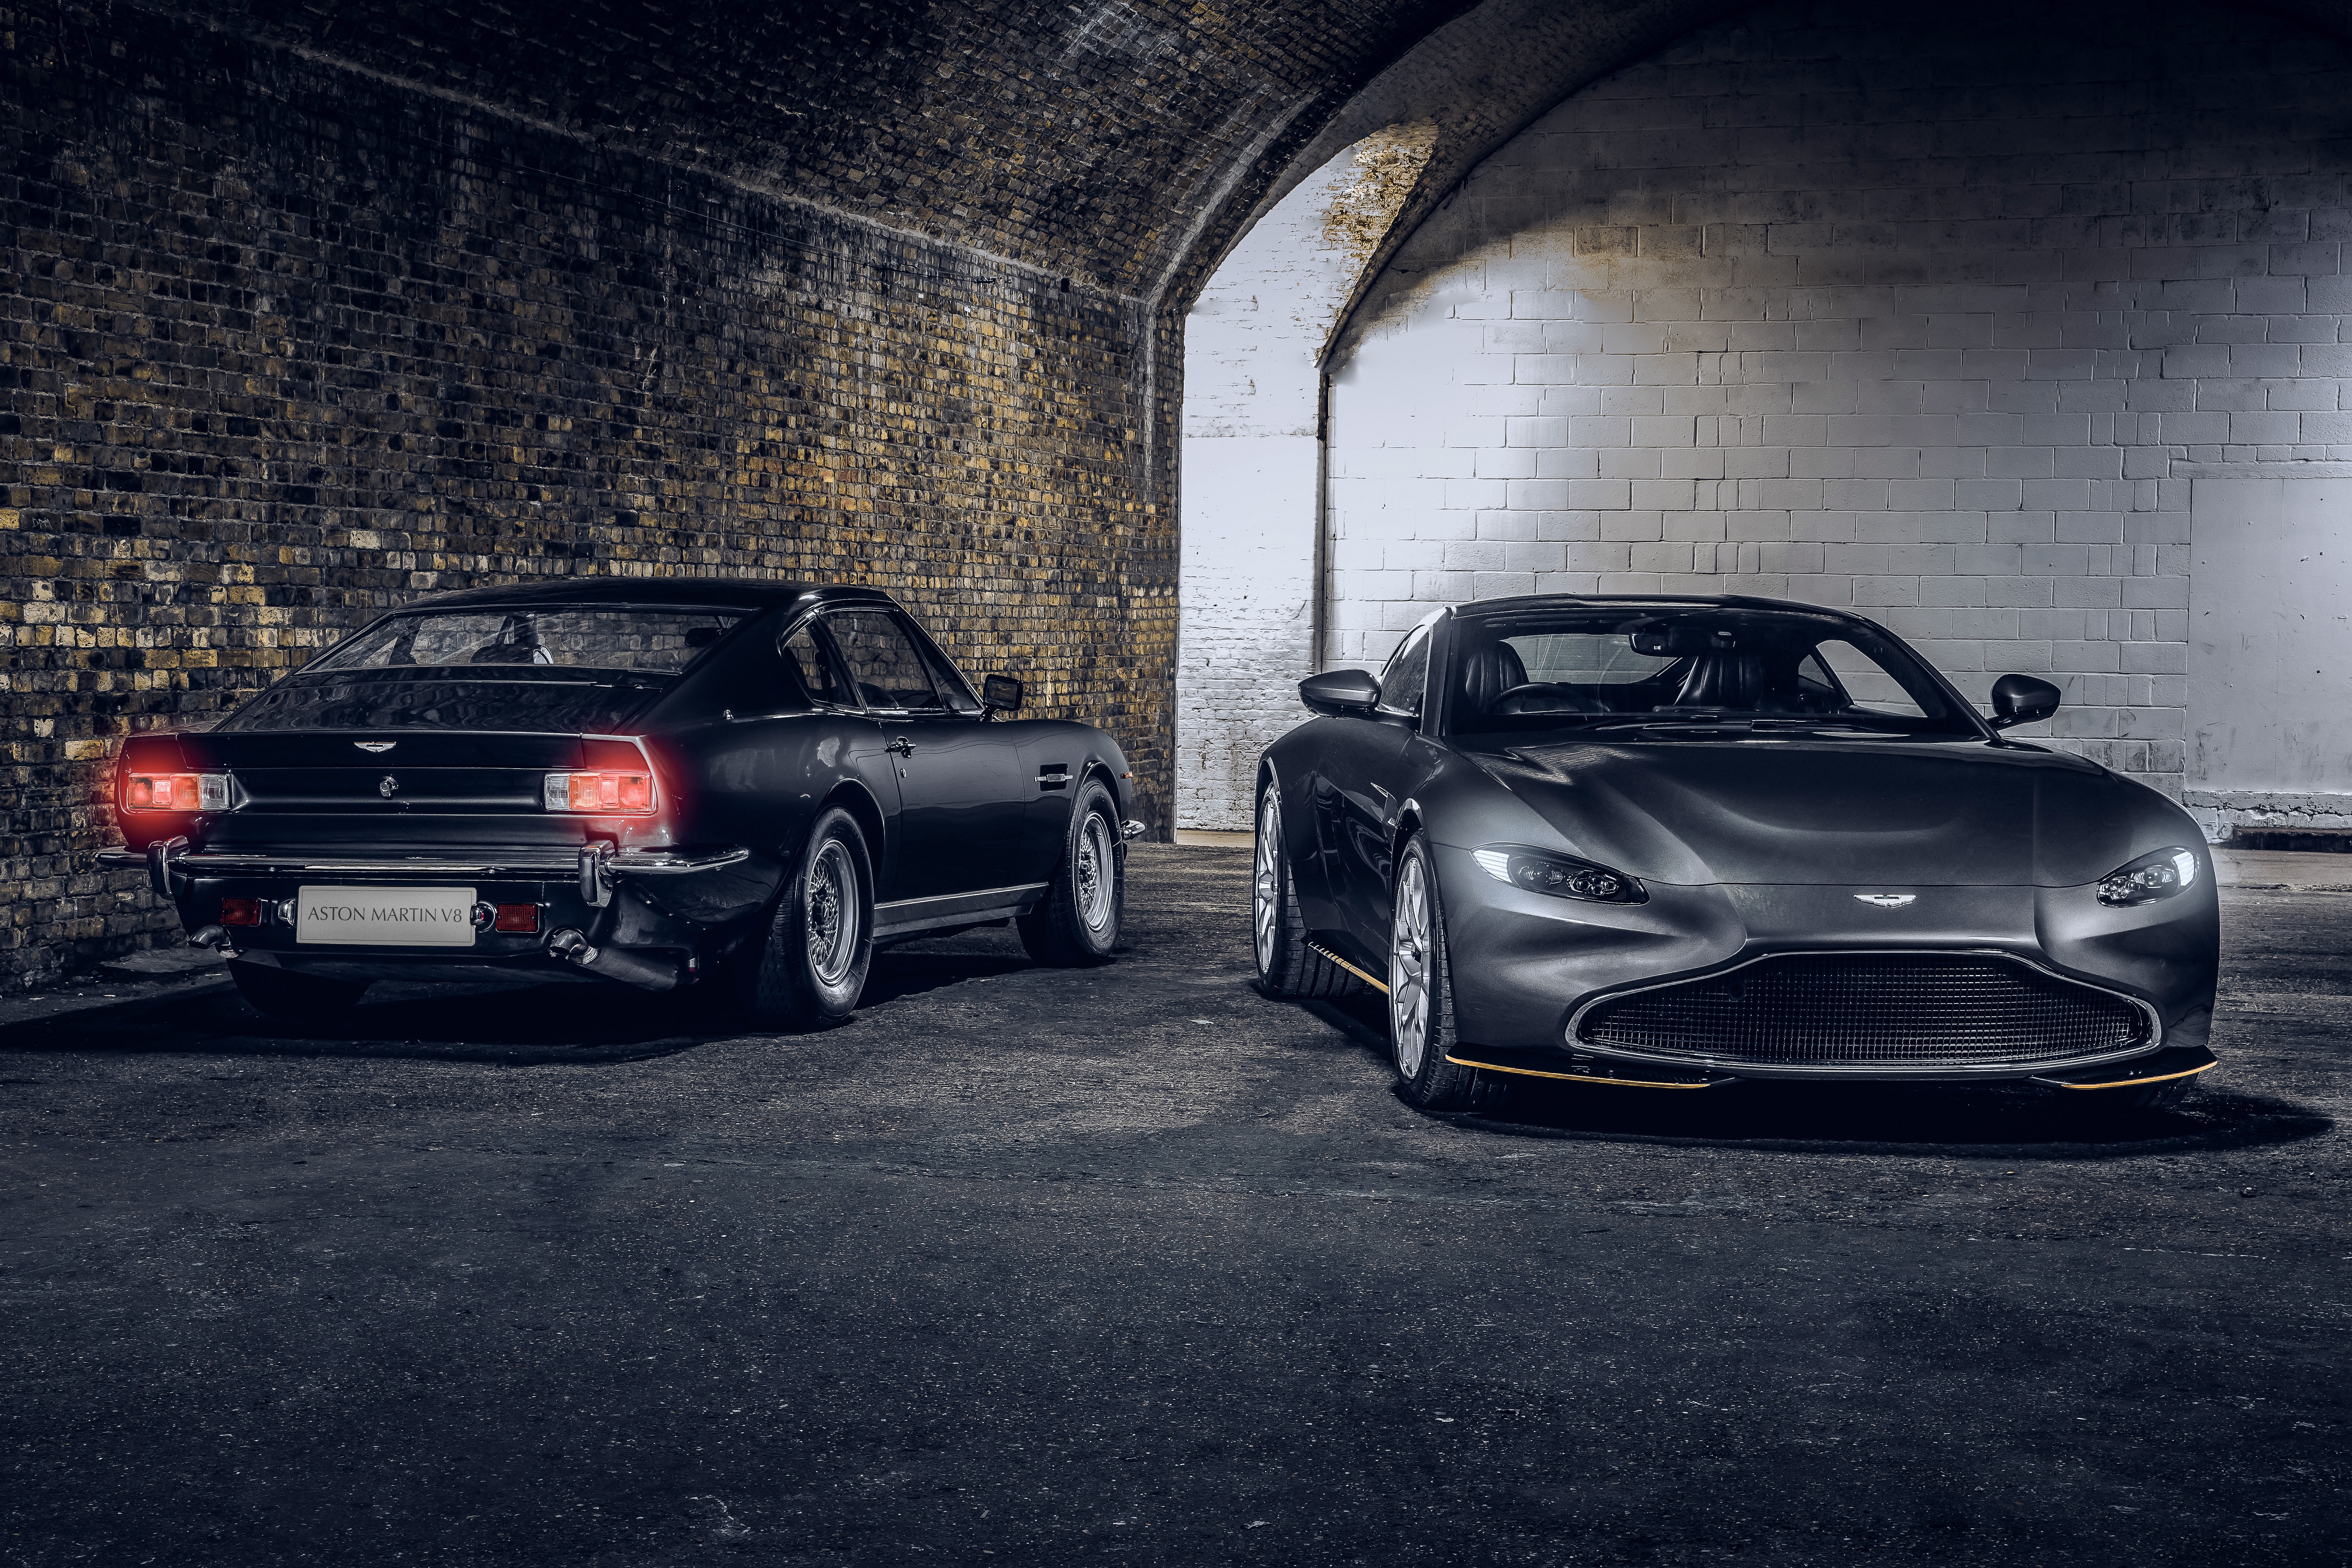 HD wallpaper, 2020, Aston Martin V8, Aston Martin Vantage 007 Edition, 5K